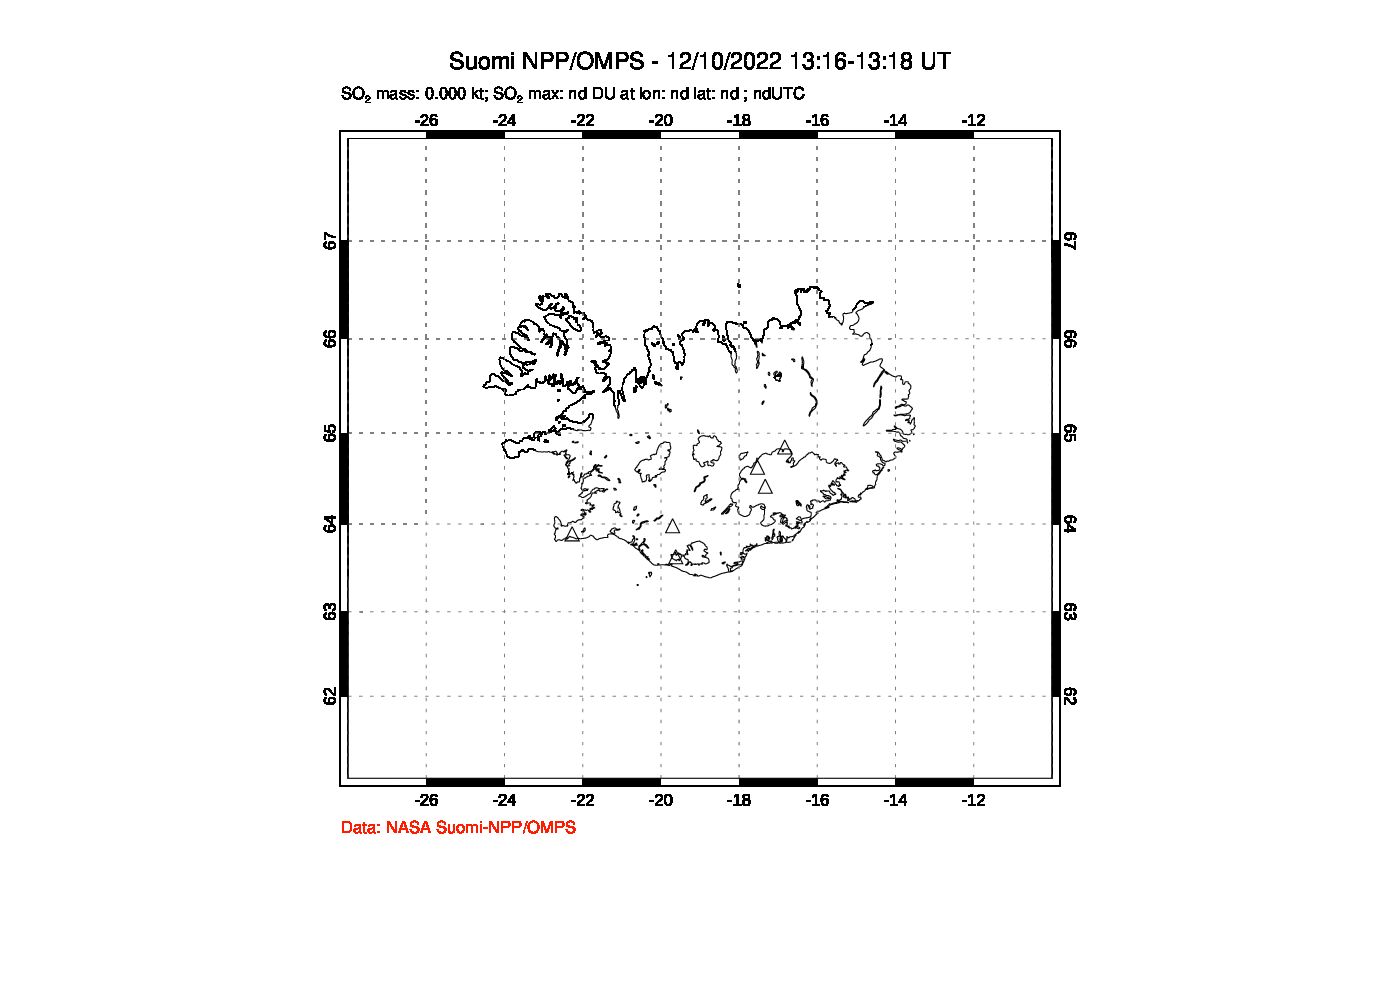 A sulfur dioxide image over Iceland on Dec 10, 2022.